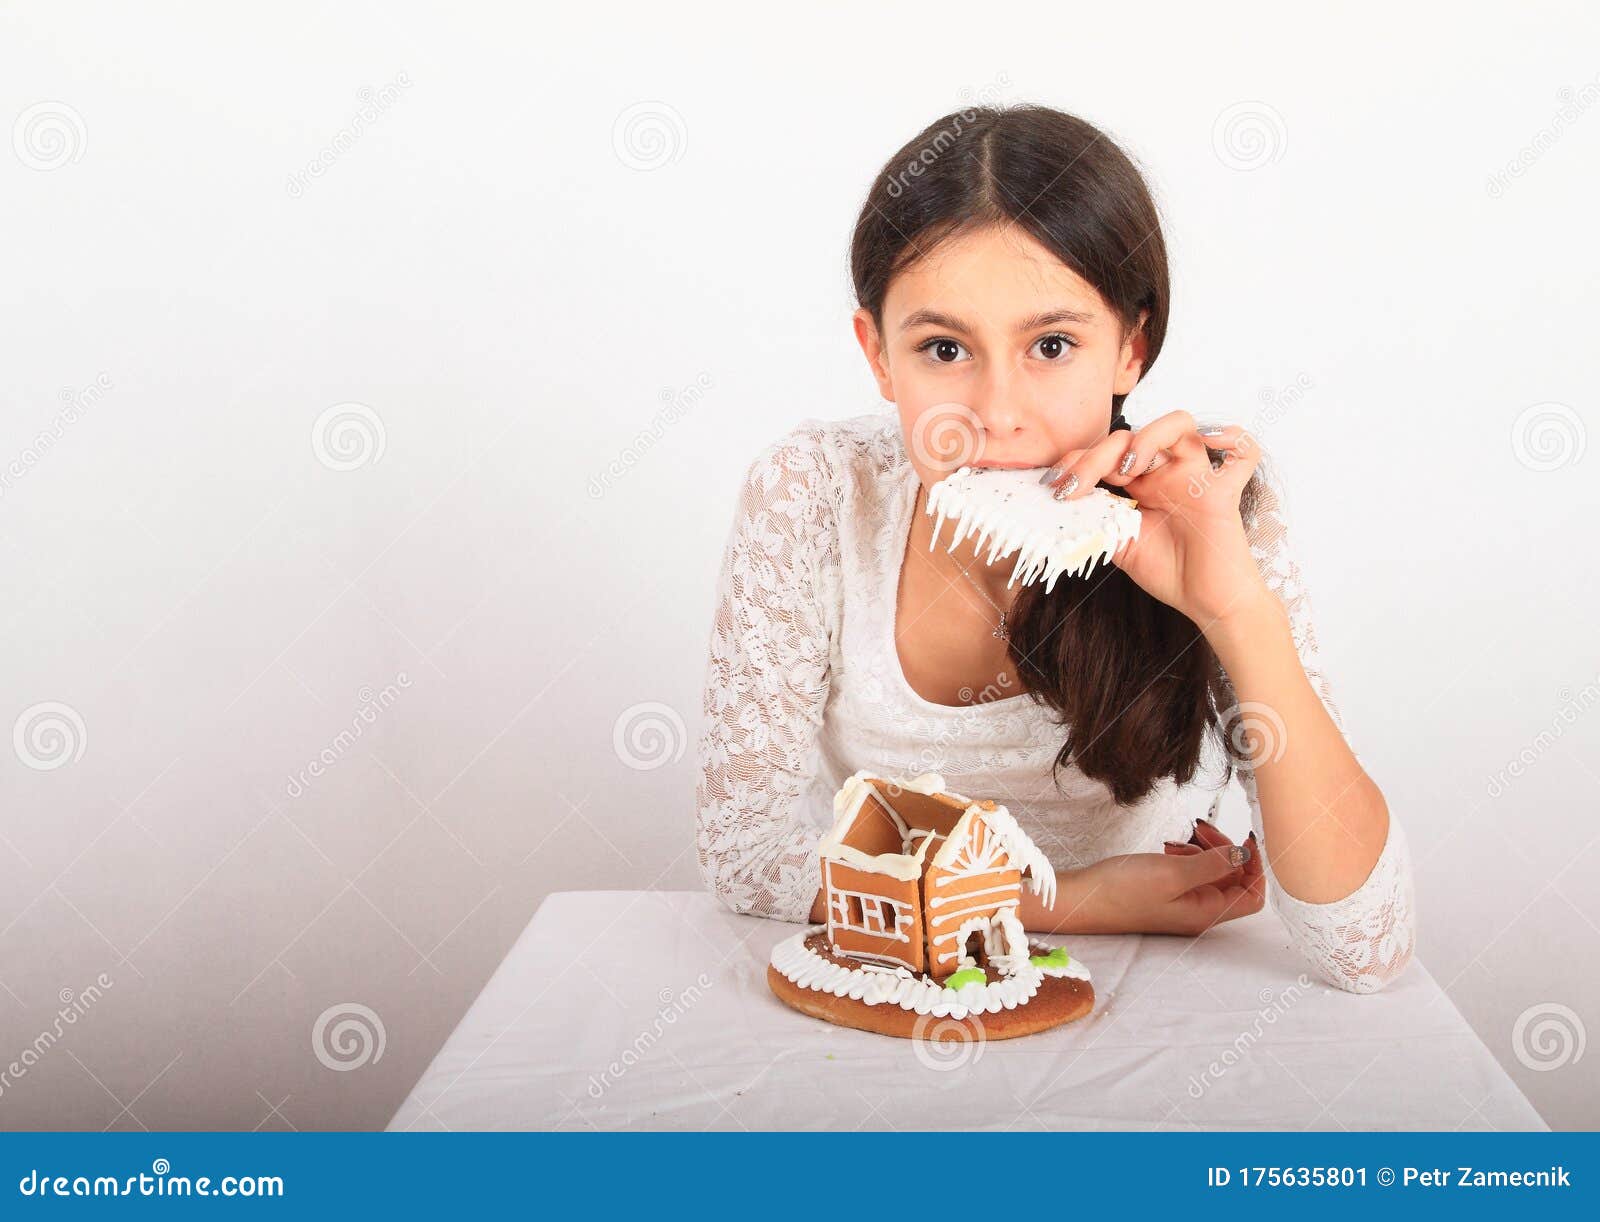 Teen Girl Eating Dreamstime